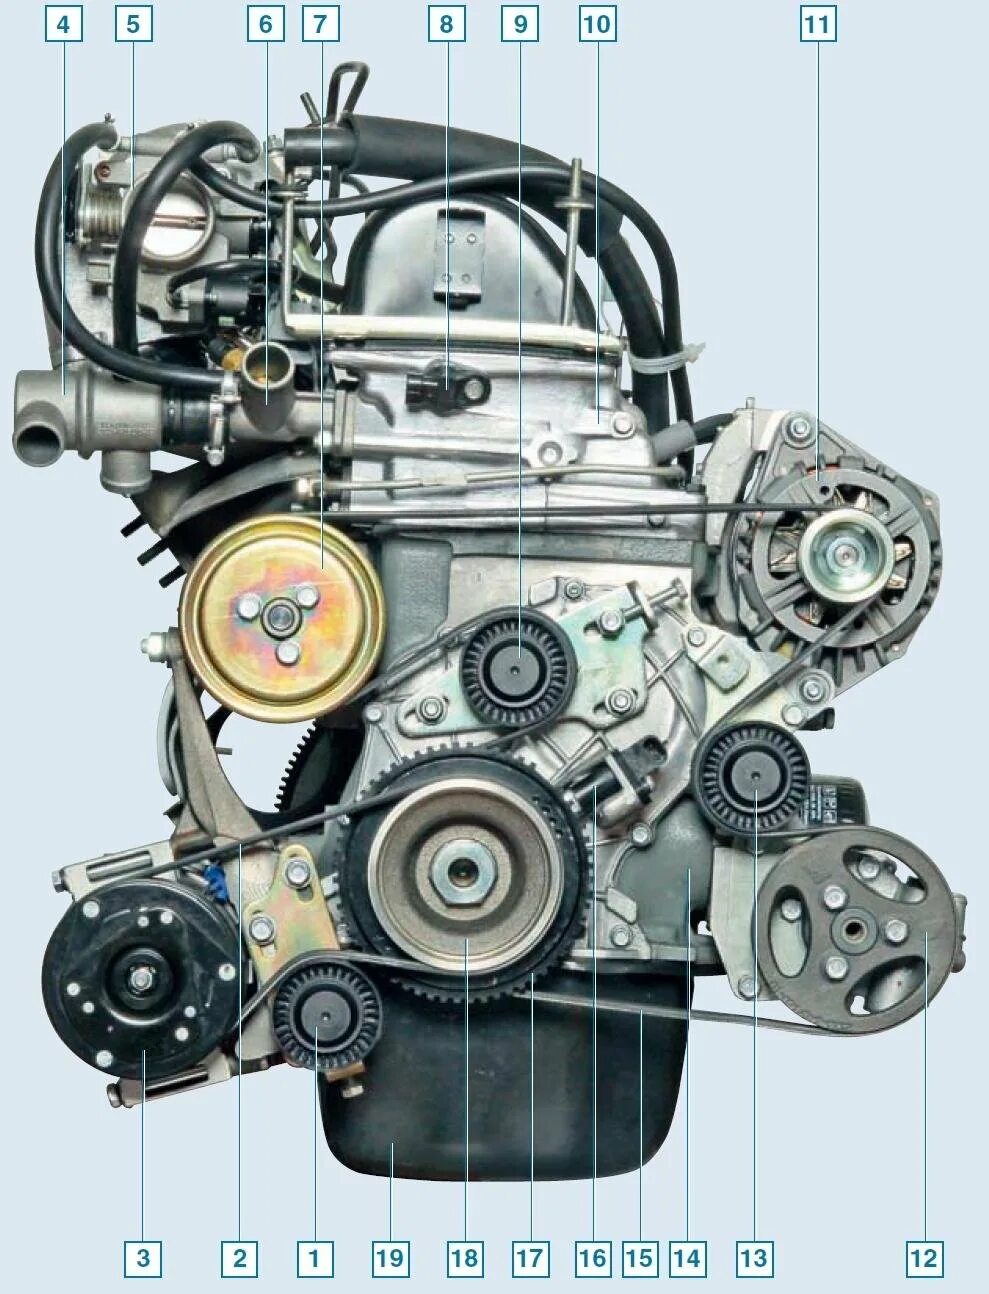 Двигатель Нива Шевроле 2123. Двигатель Нива 2123 с кондиционером. Двигатель ВАЗ 2123 ГРМ. Двигатель на ВАЗ 2123 Нива Шевроле с кондиционером.